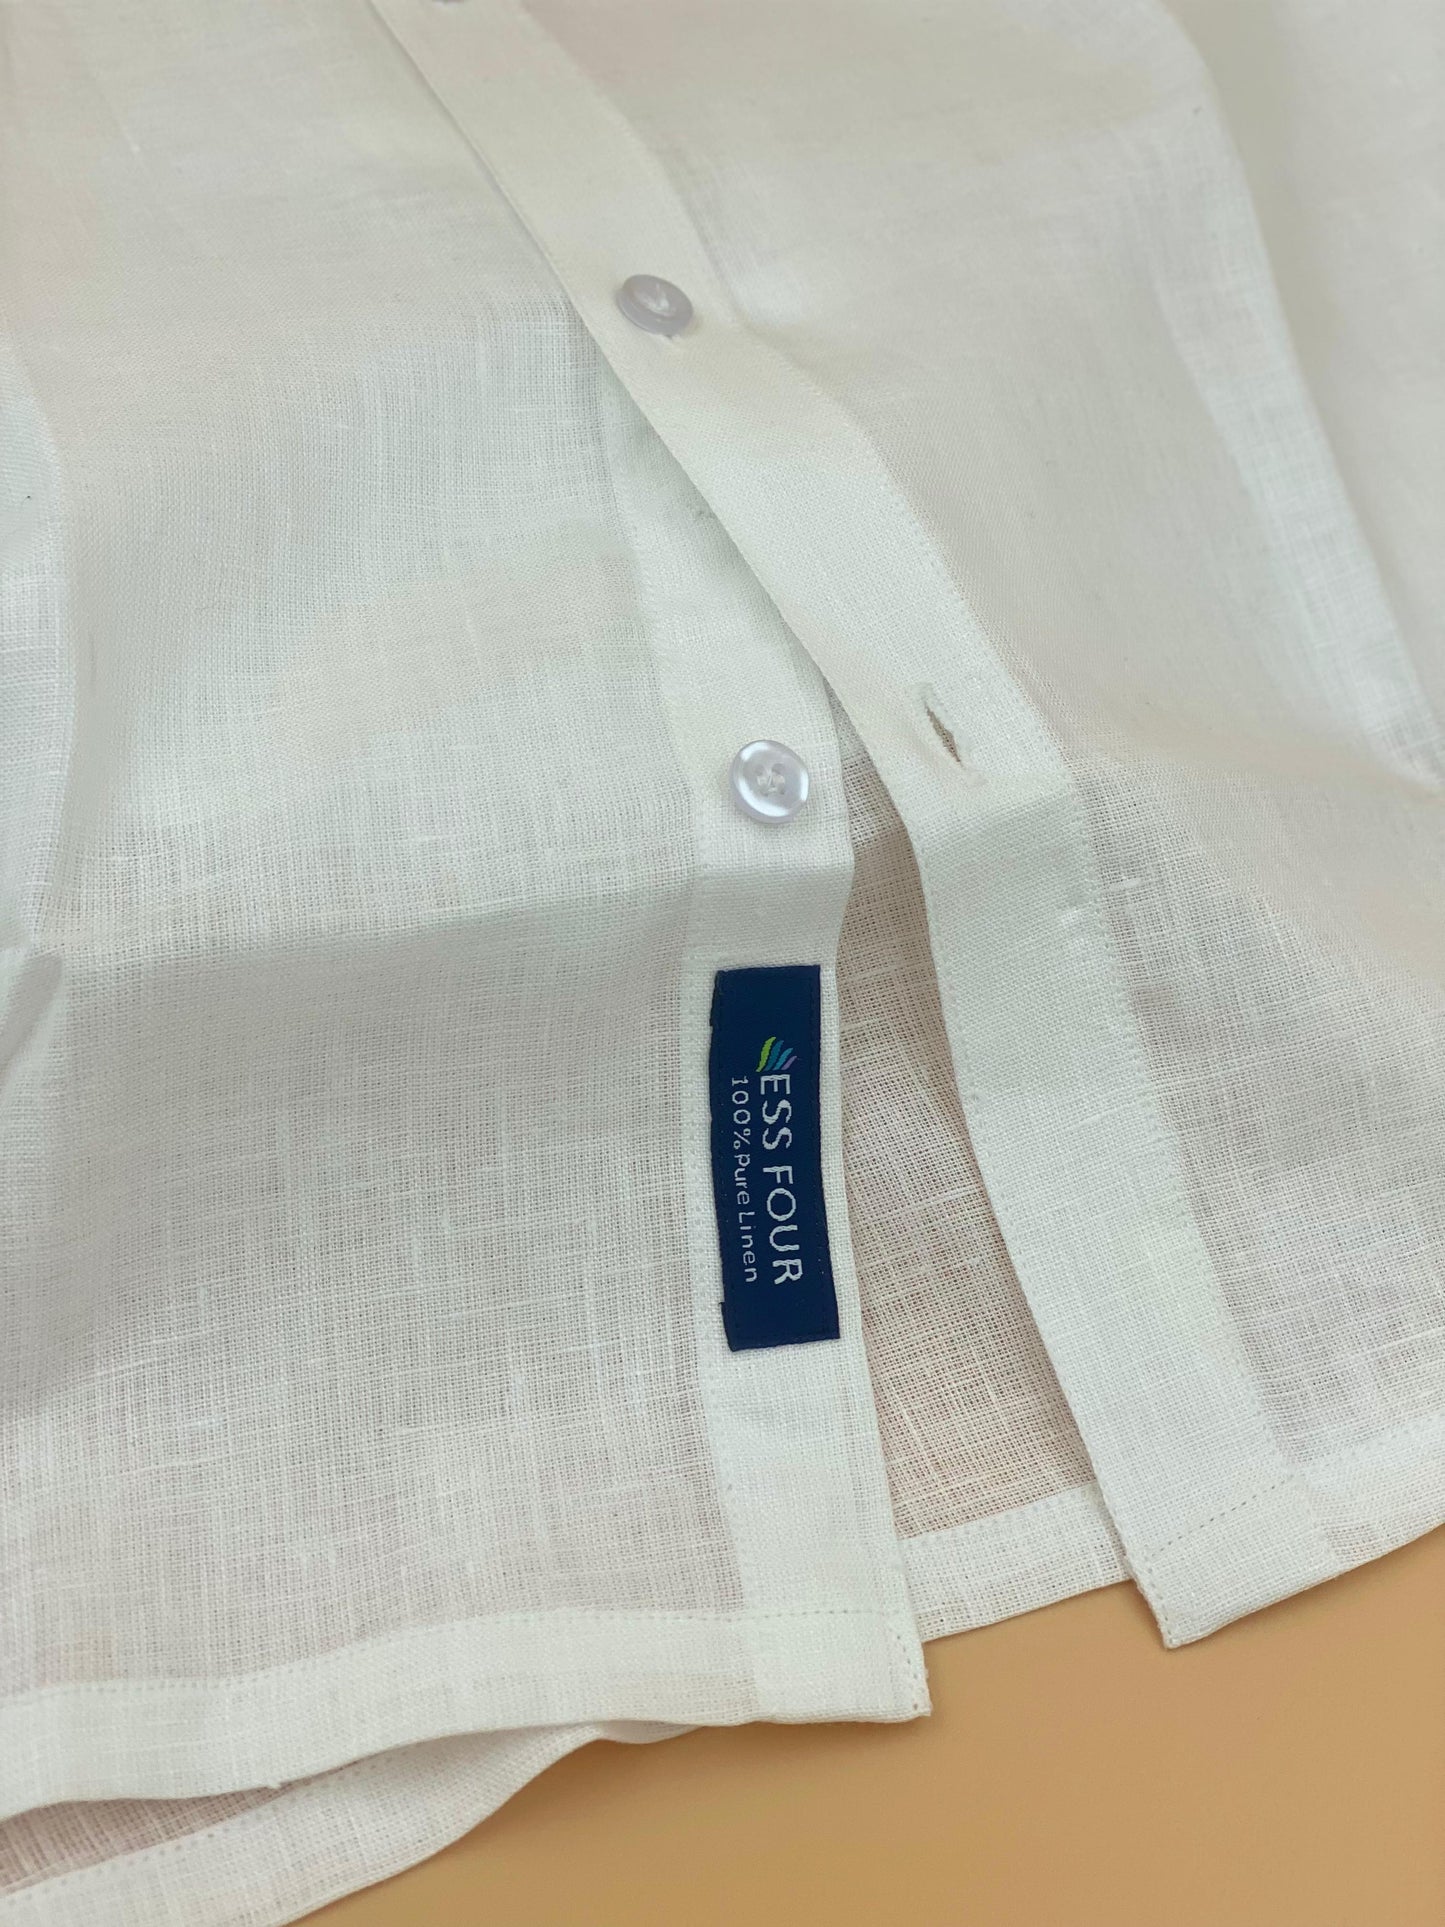 Premium Men's White Linen Shirt